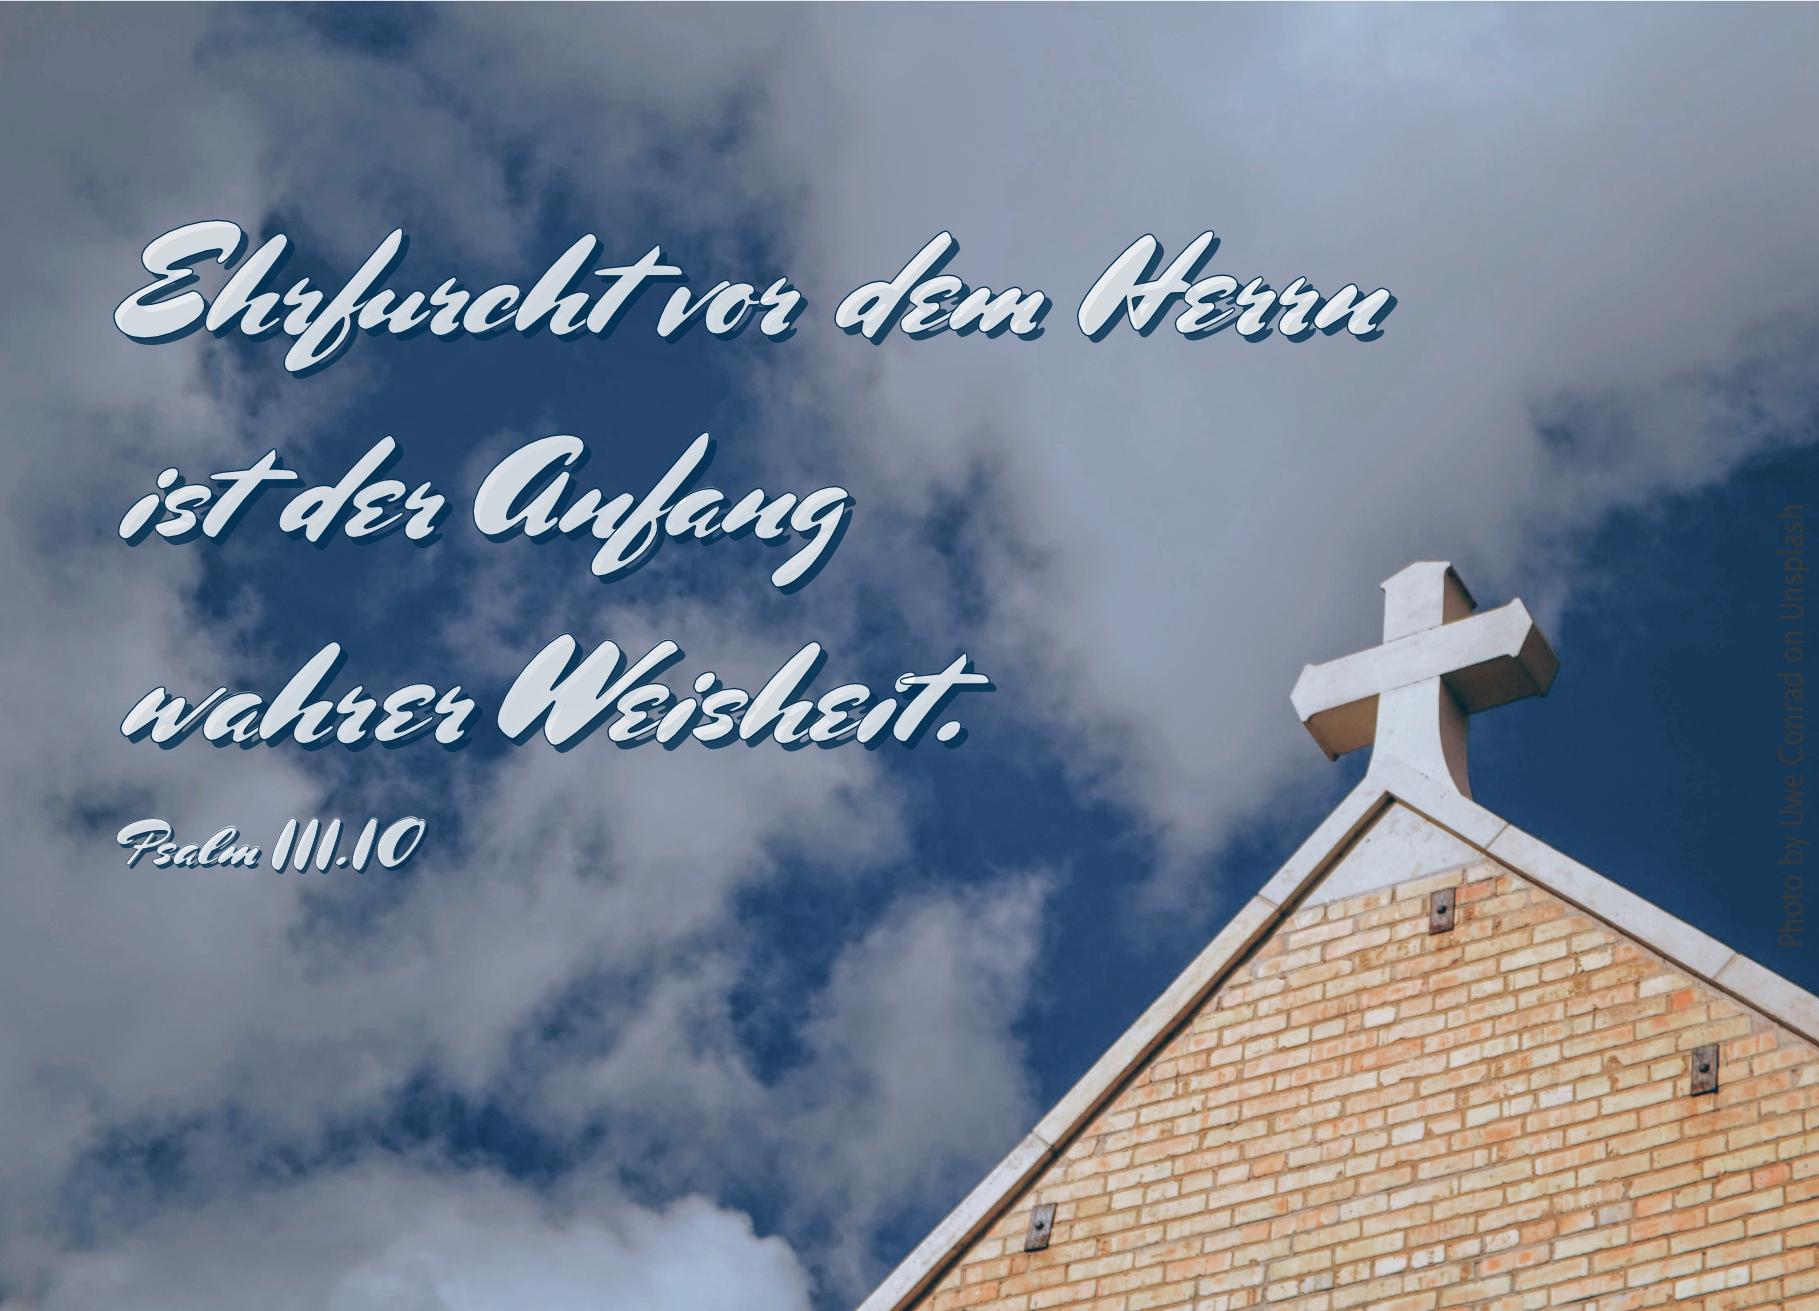 alt="Kreuz_auf_Dachspitze_vor_Himmel_mit_Wolken_erwartet_bibelhoerbuch_nicht_richten"